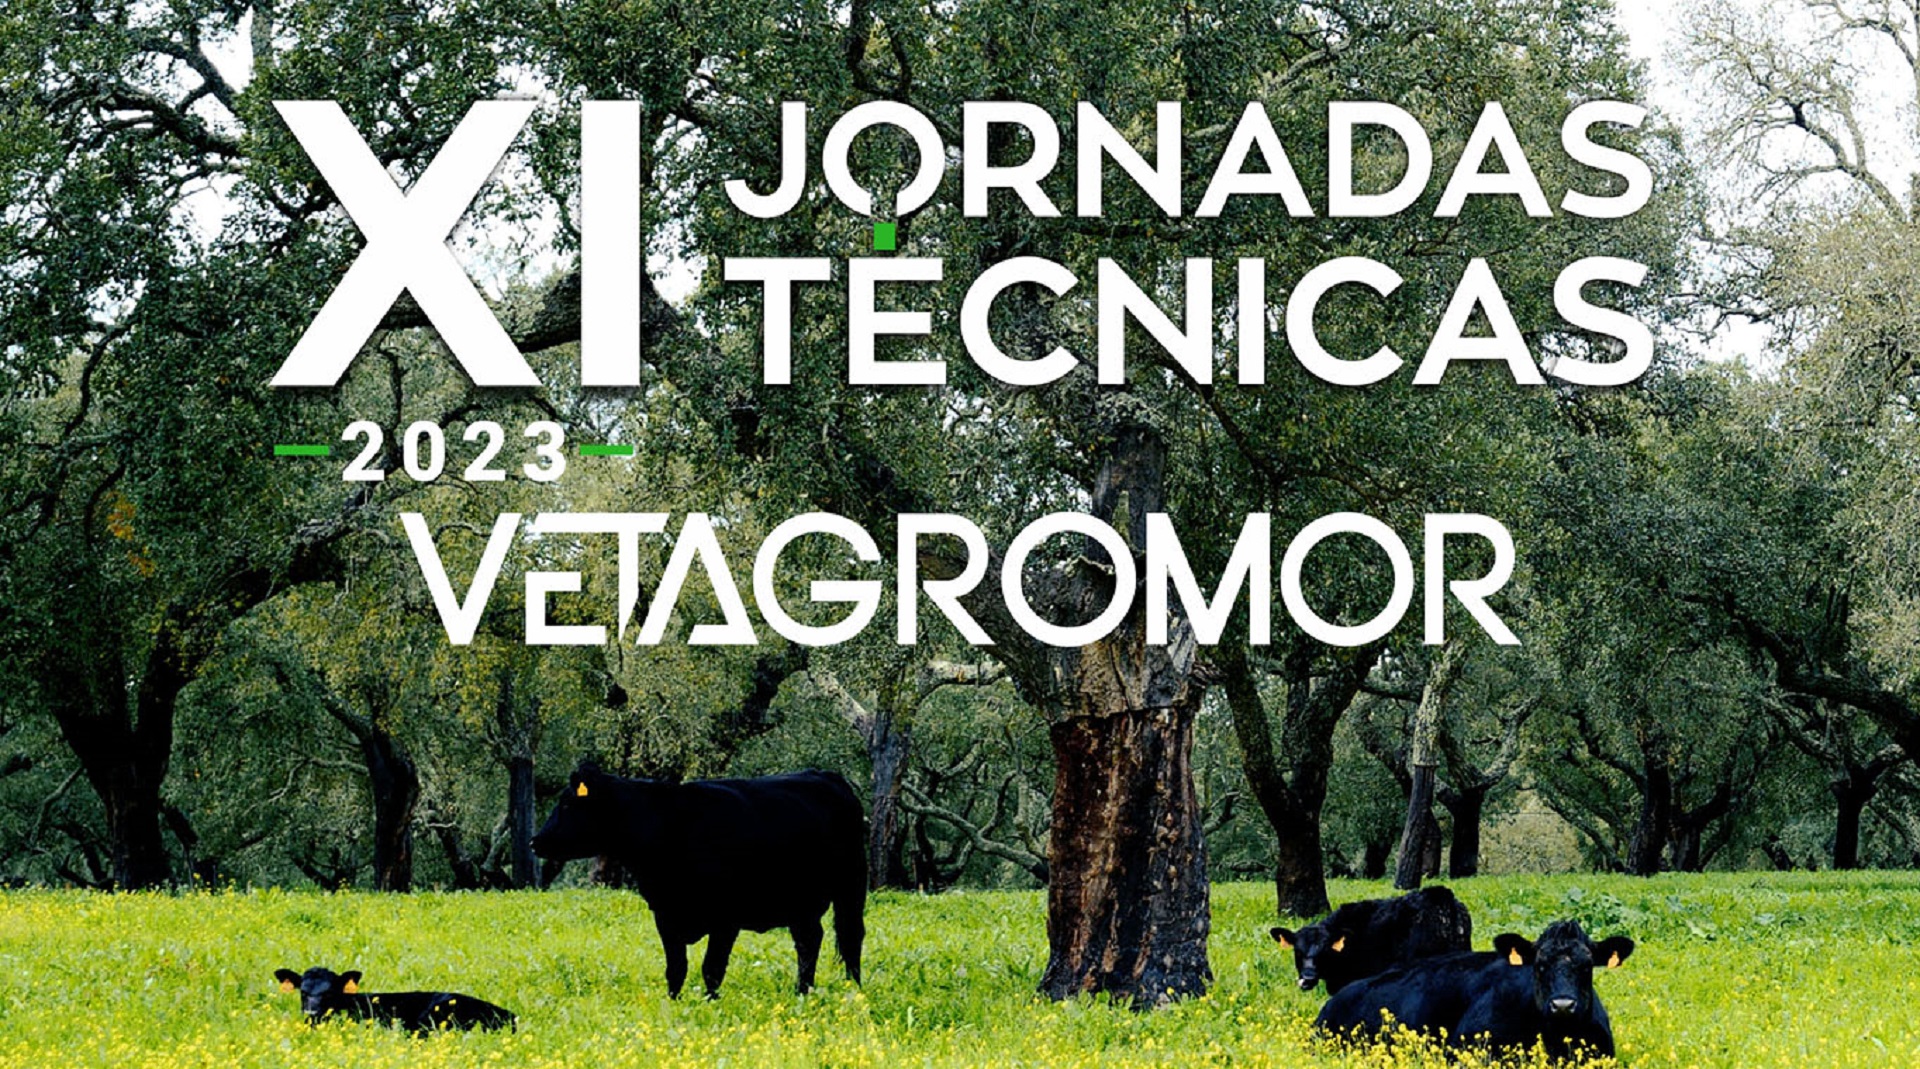 XI Jornadas Técnicas da Vetagromor 2023 amanhã no Auditório Municipal de Alcácer